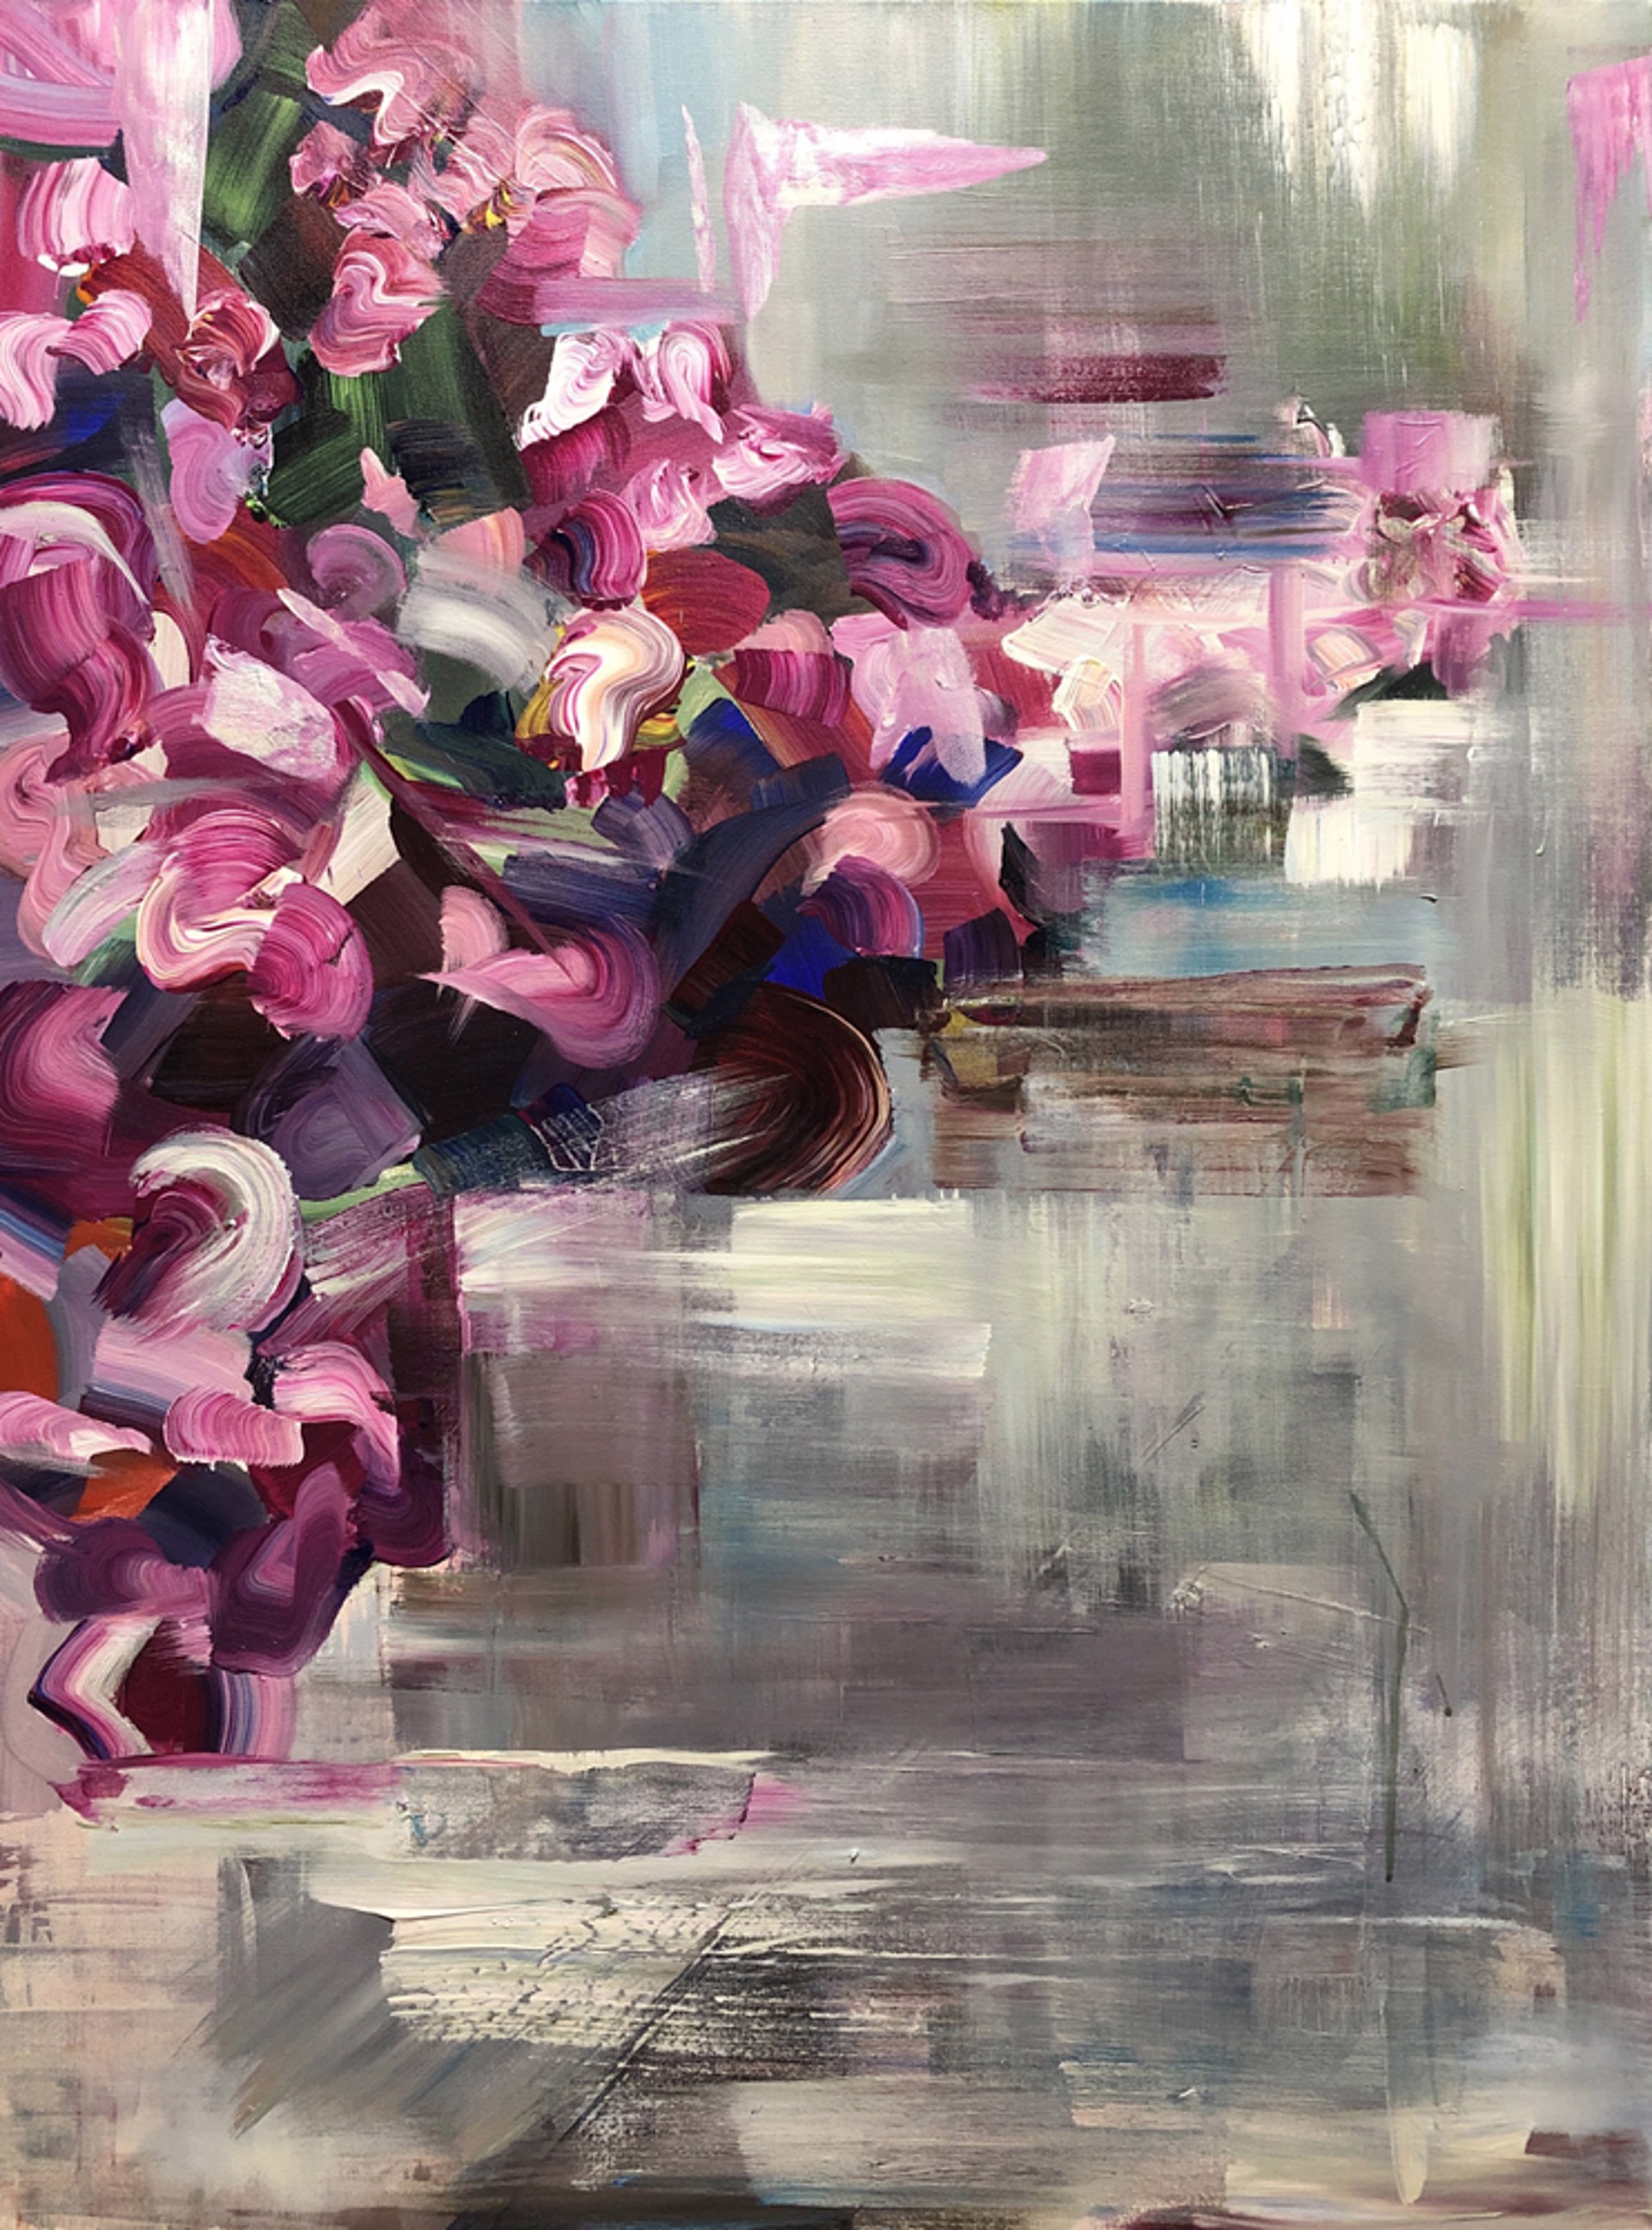 Wall Flowers II by Brooke Borcherding